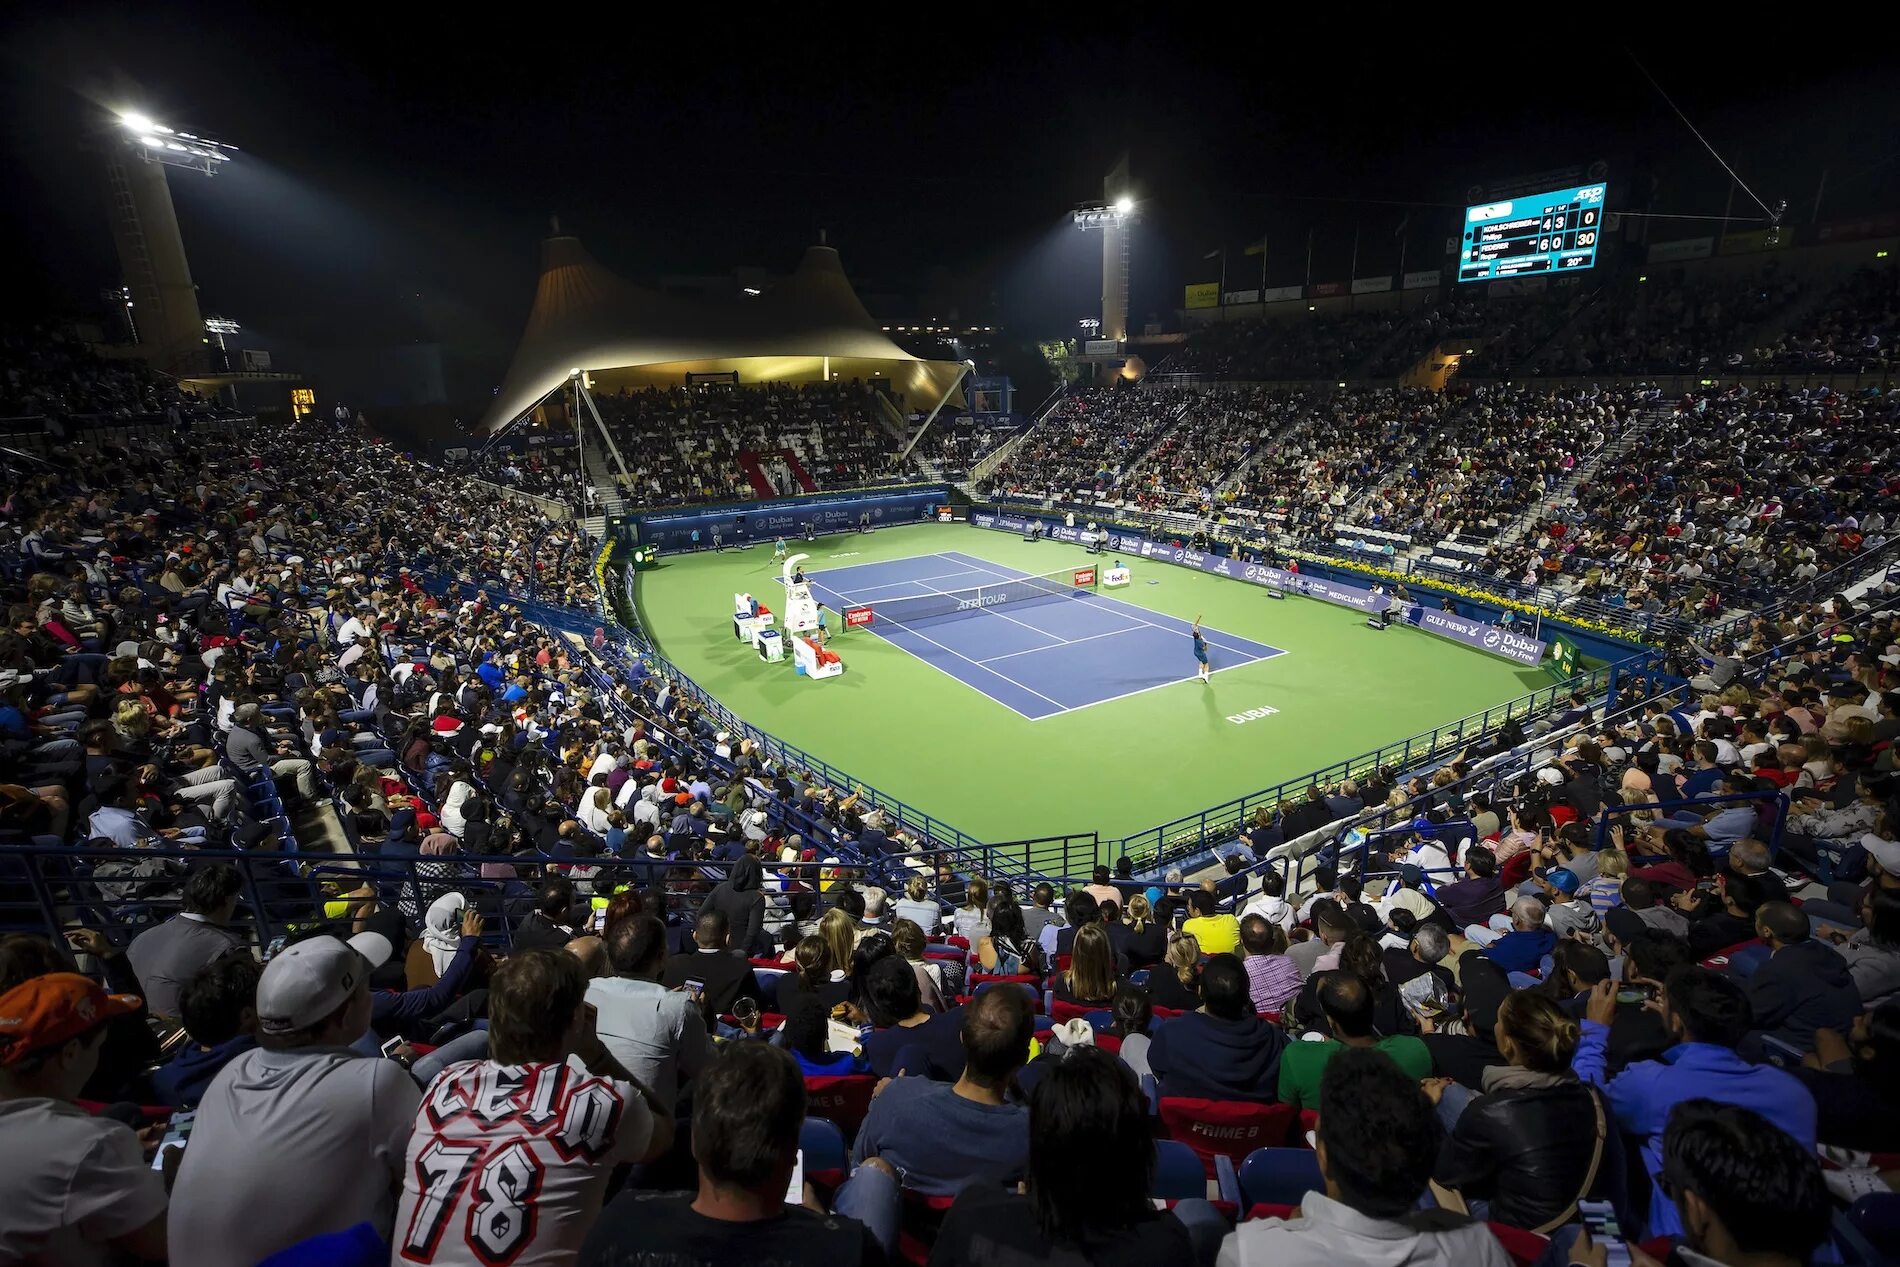 Atp dubai. Теннисный стадион. Стадион тенниса с зрителями. Dubai Tennis Stadium. Теннис зрители.